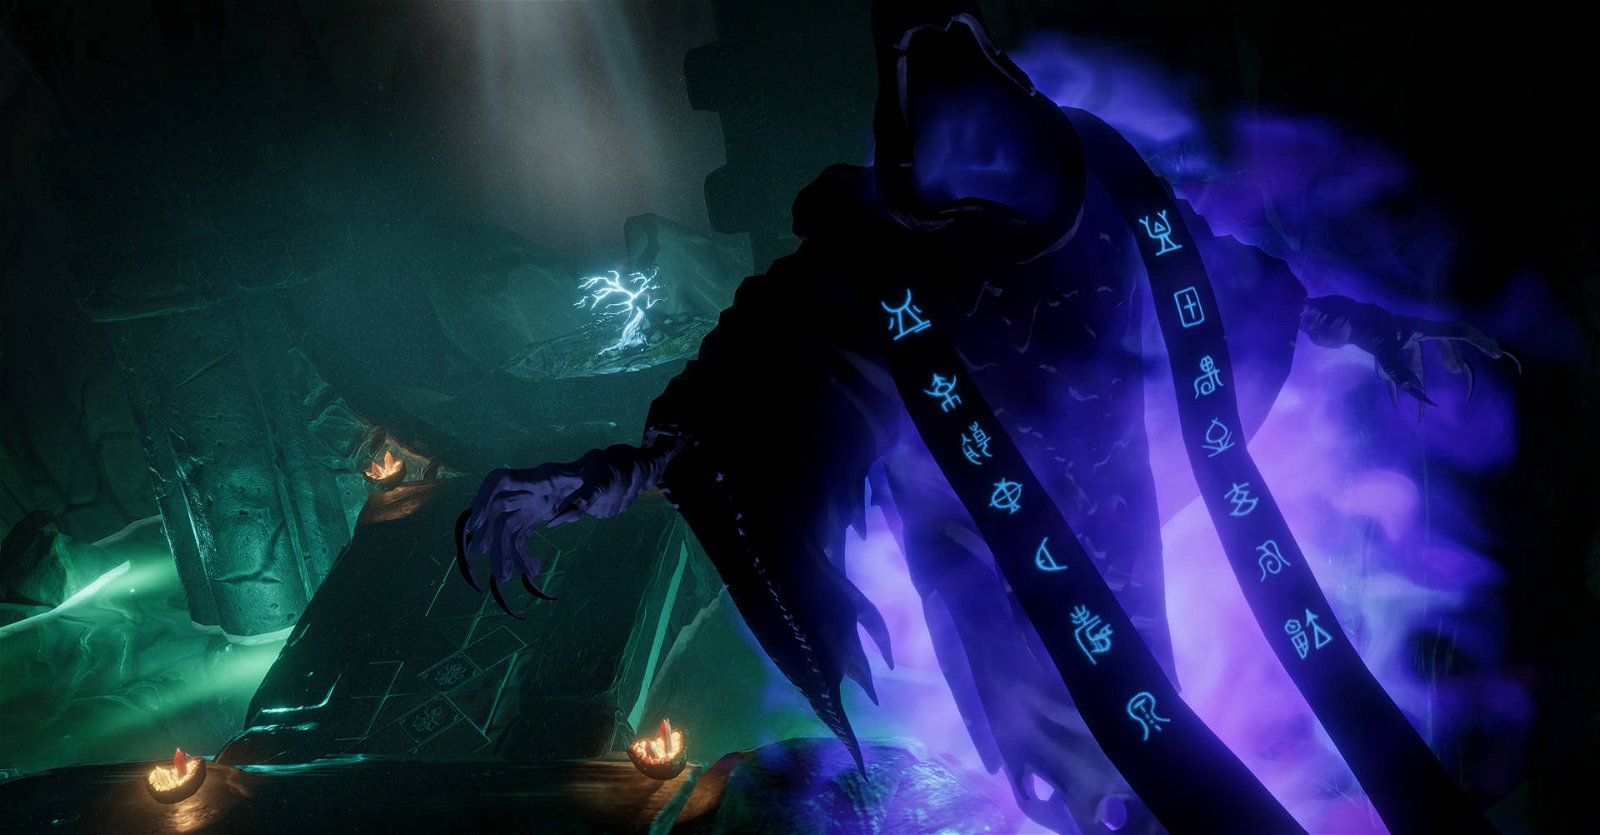 Immagine di Underworld Ascendant Recensione, simulazione immersiva difettosa